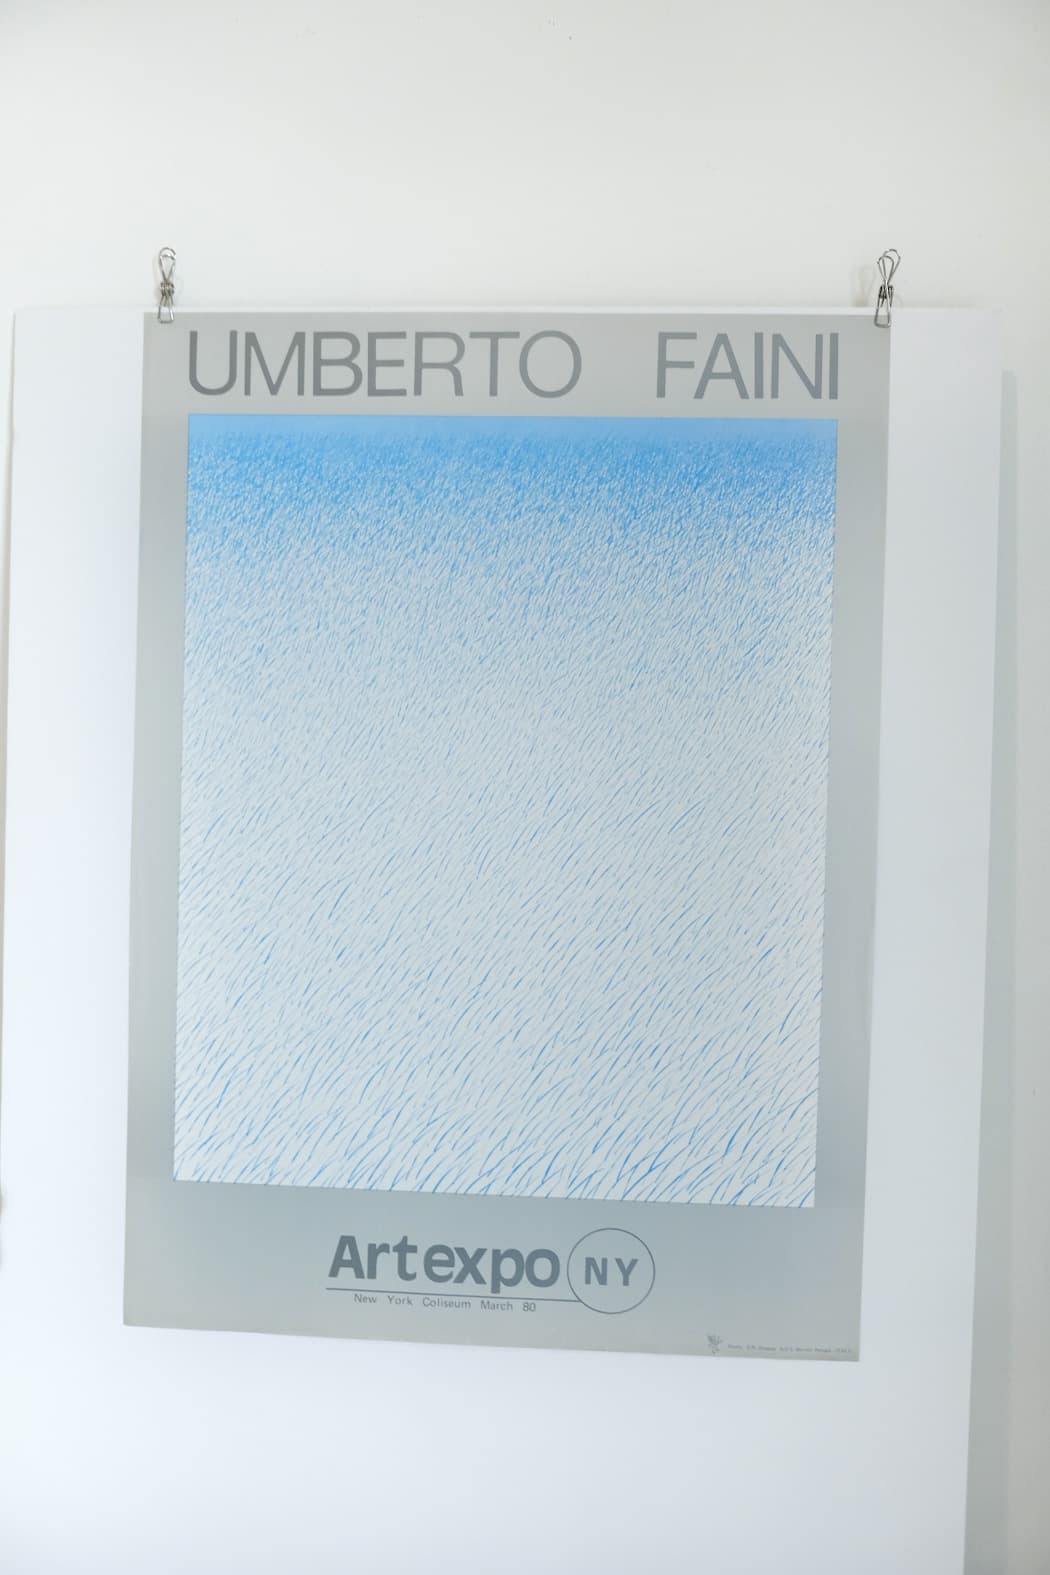 Umberto Faini Art Expo 1980